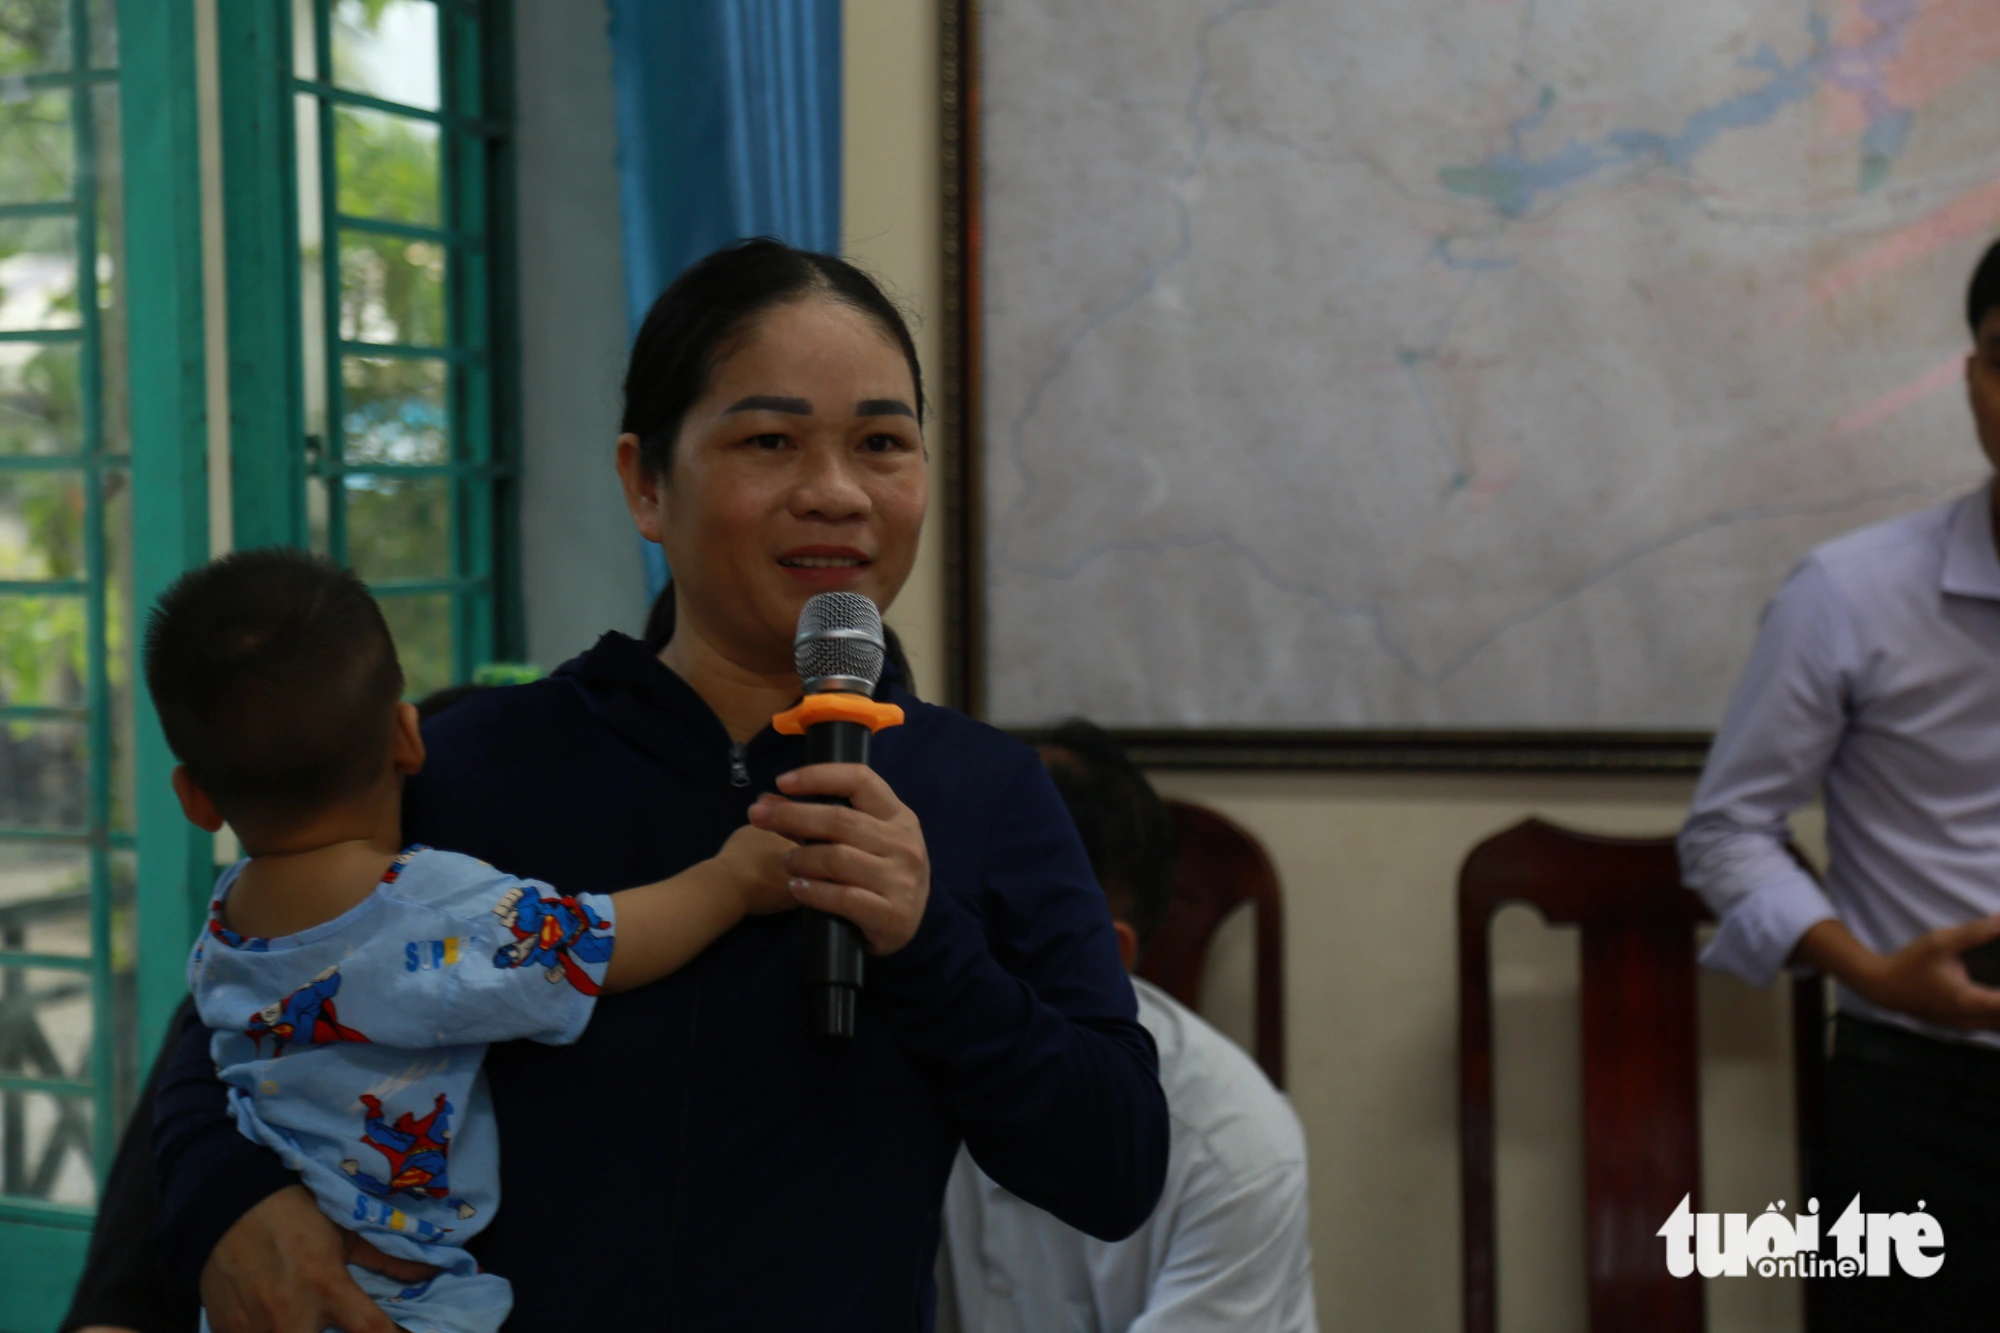 Bà Trần Thị Thùy Trang, phụ huynh duy nhất có mặt tại buổi đối thoại, cho biết mình không đưa con lớp 5 đi học ở trường mới khang trang hơn vì nhà không có người đưa đón - Ảnh: ĐOÀN NHẠN